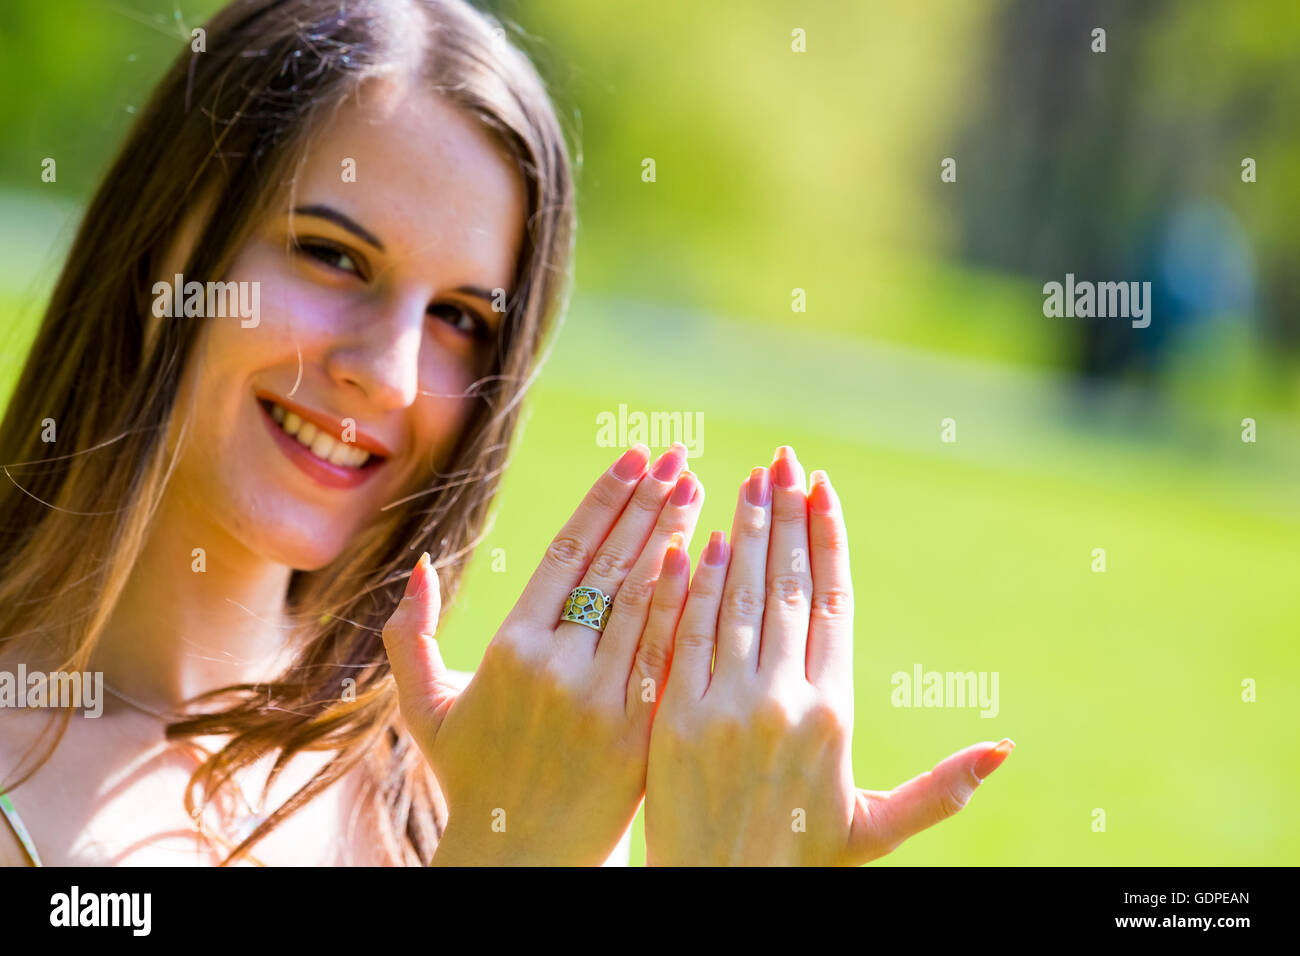 girl shows fingernails Stock Photo